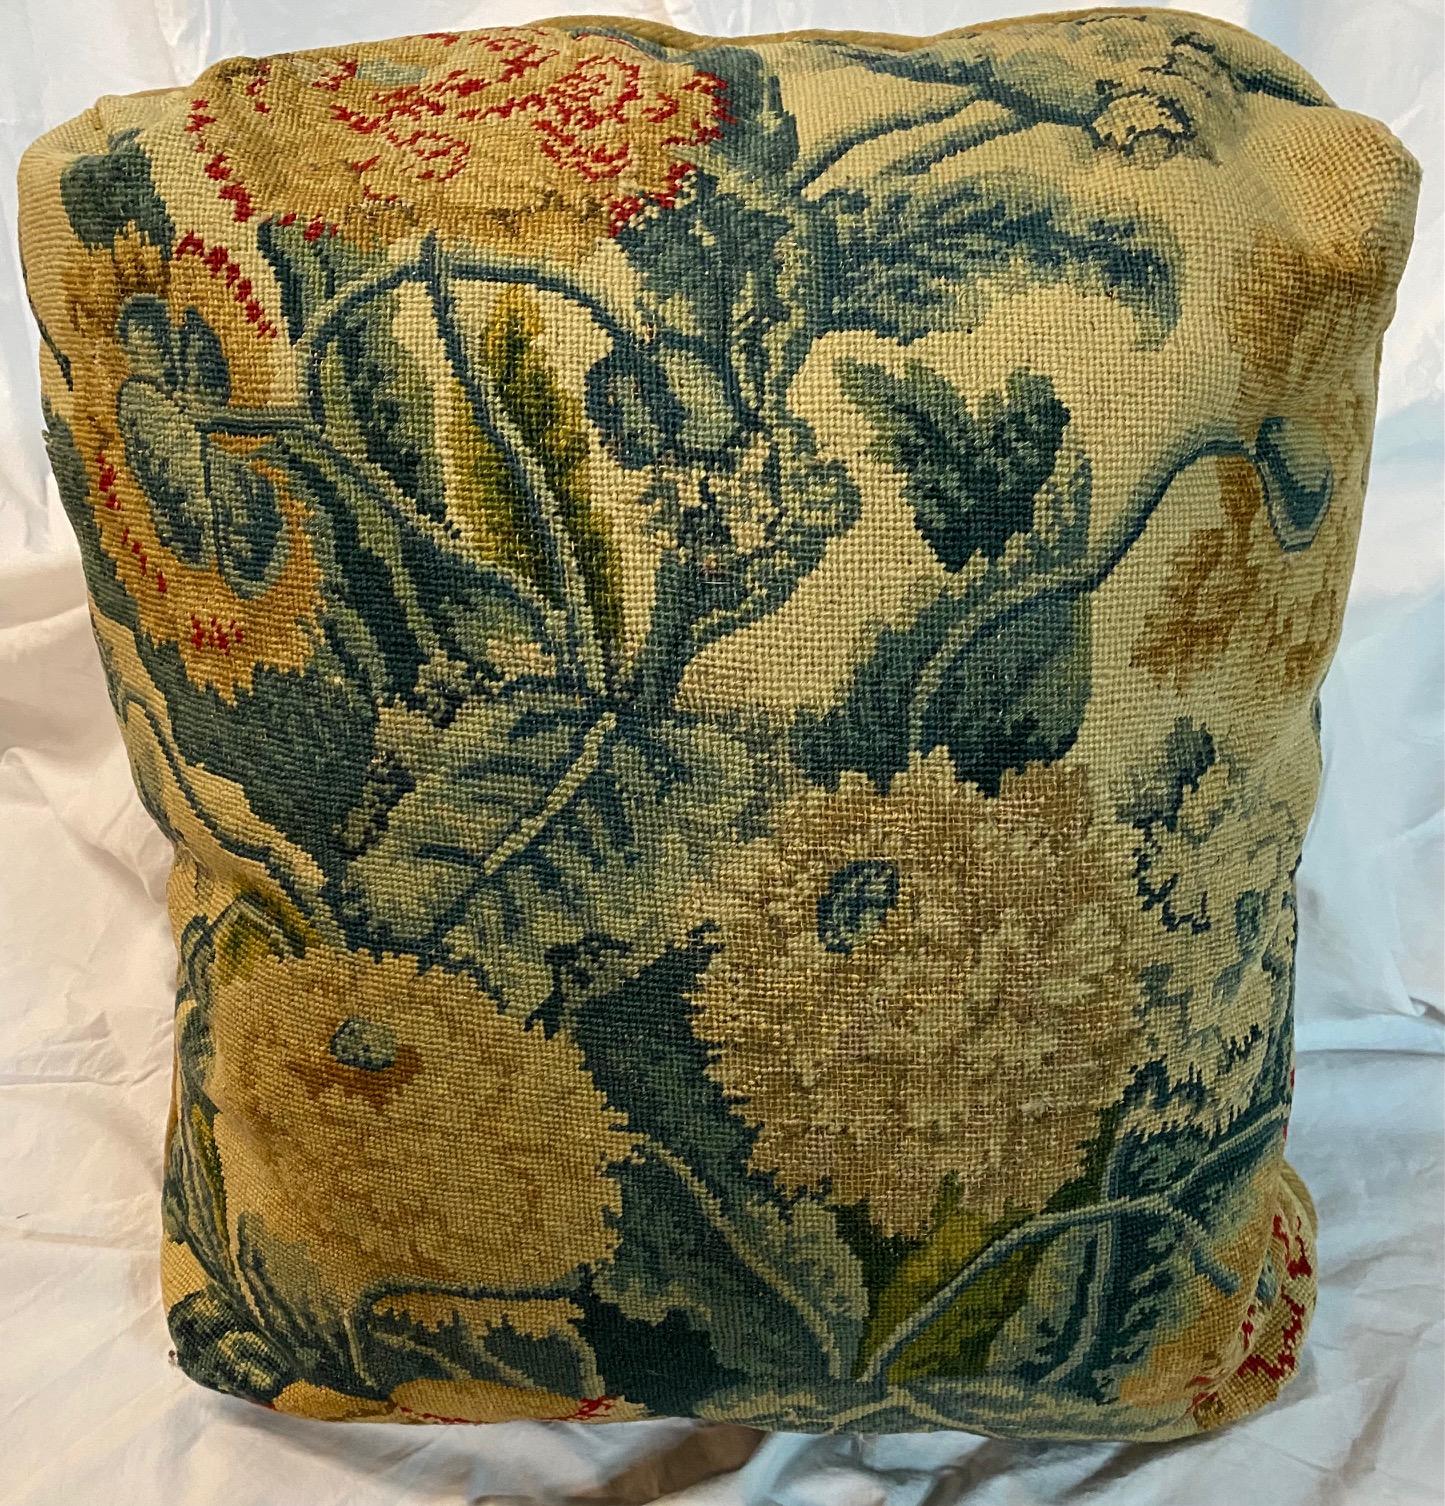 Ein Paar handgearbeitete Blumenkissen mit Samtbezug.
18. Jahrhundert
Maße: 18